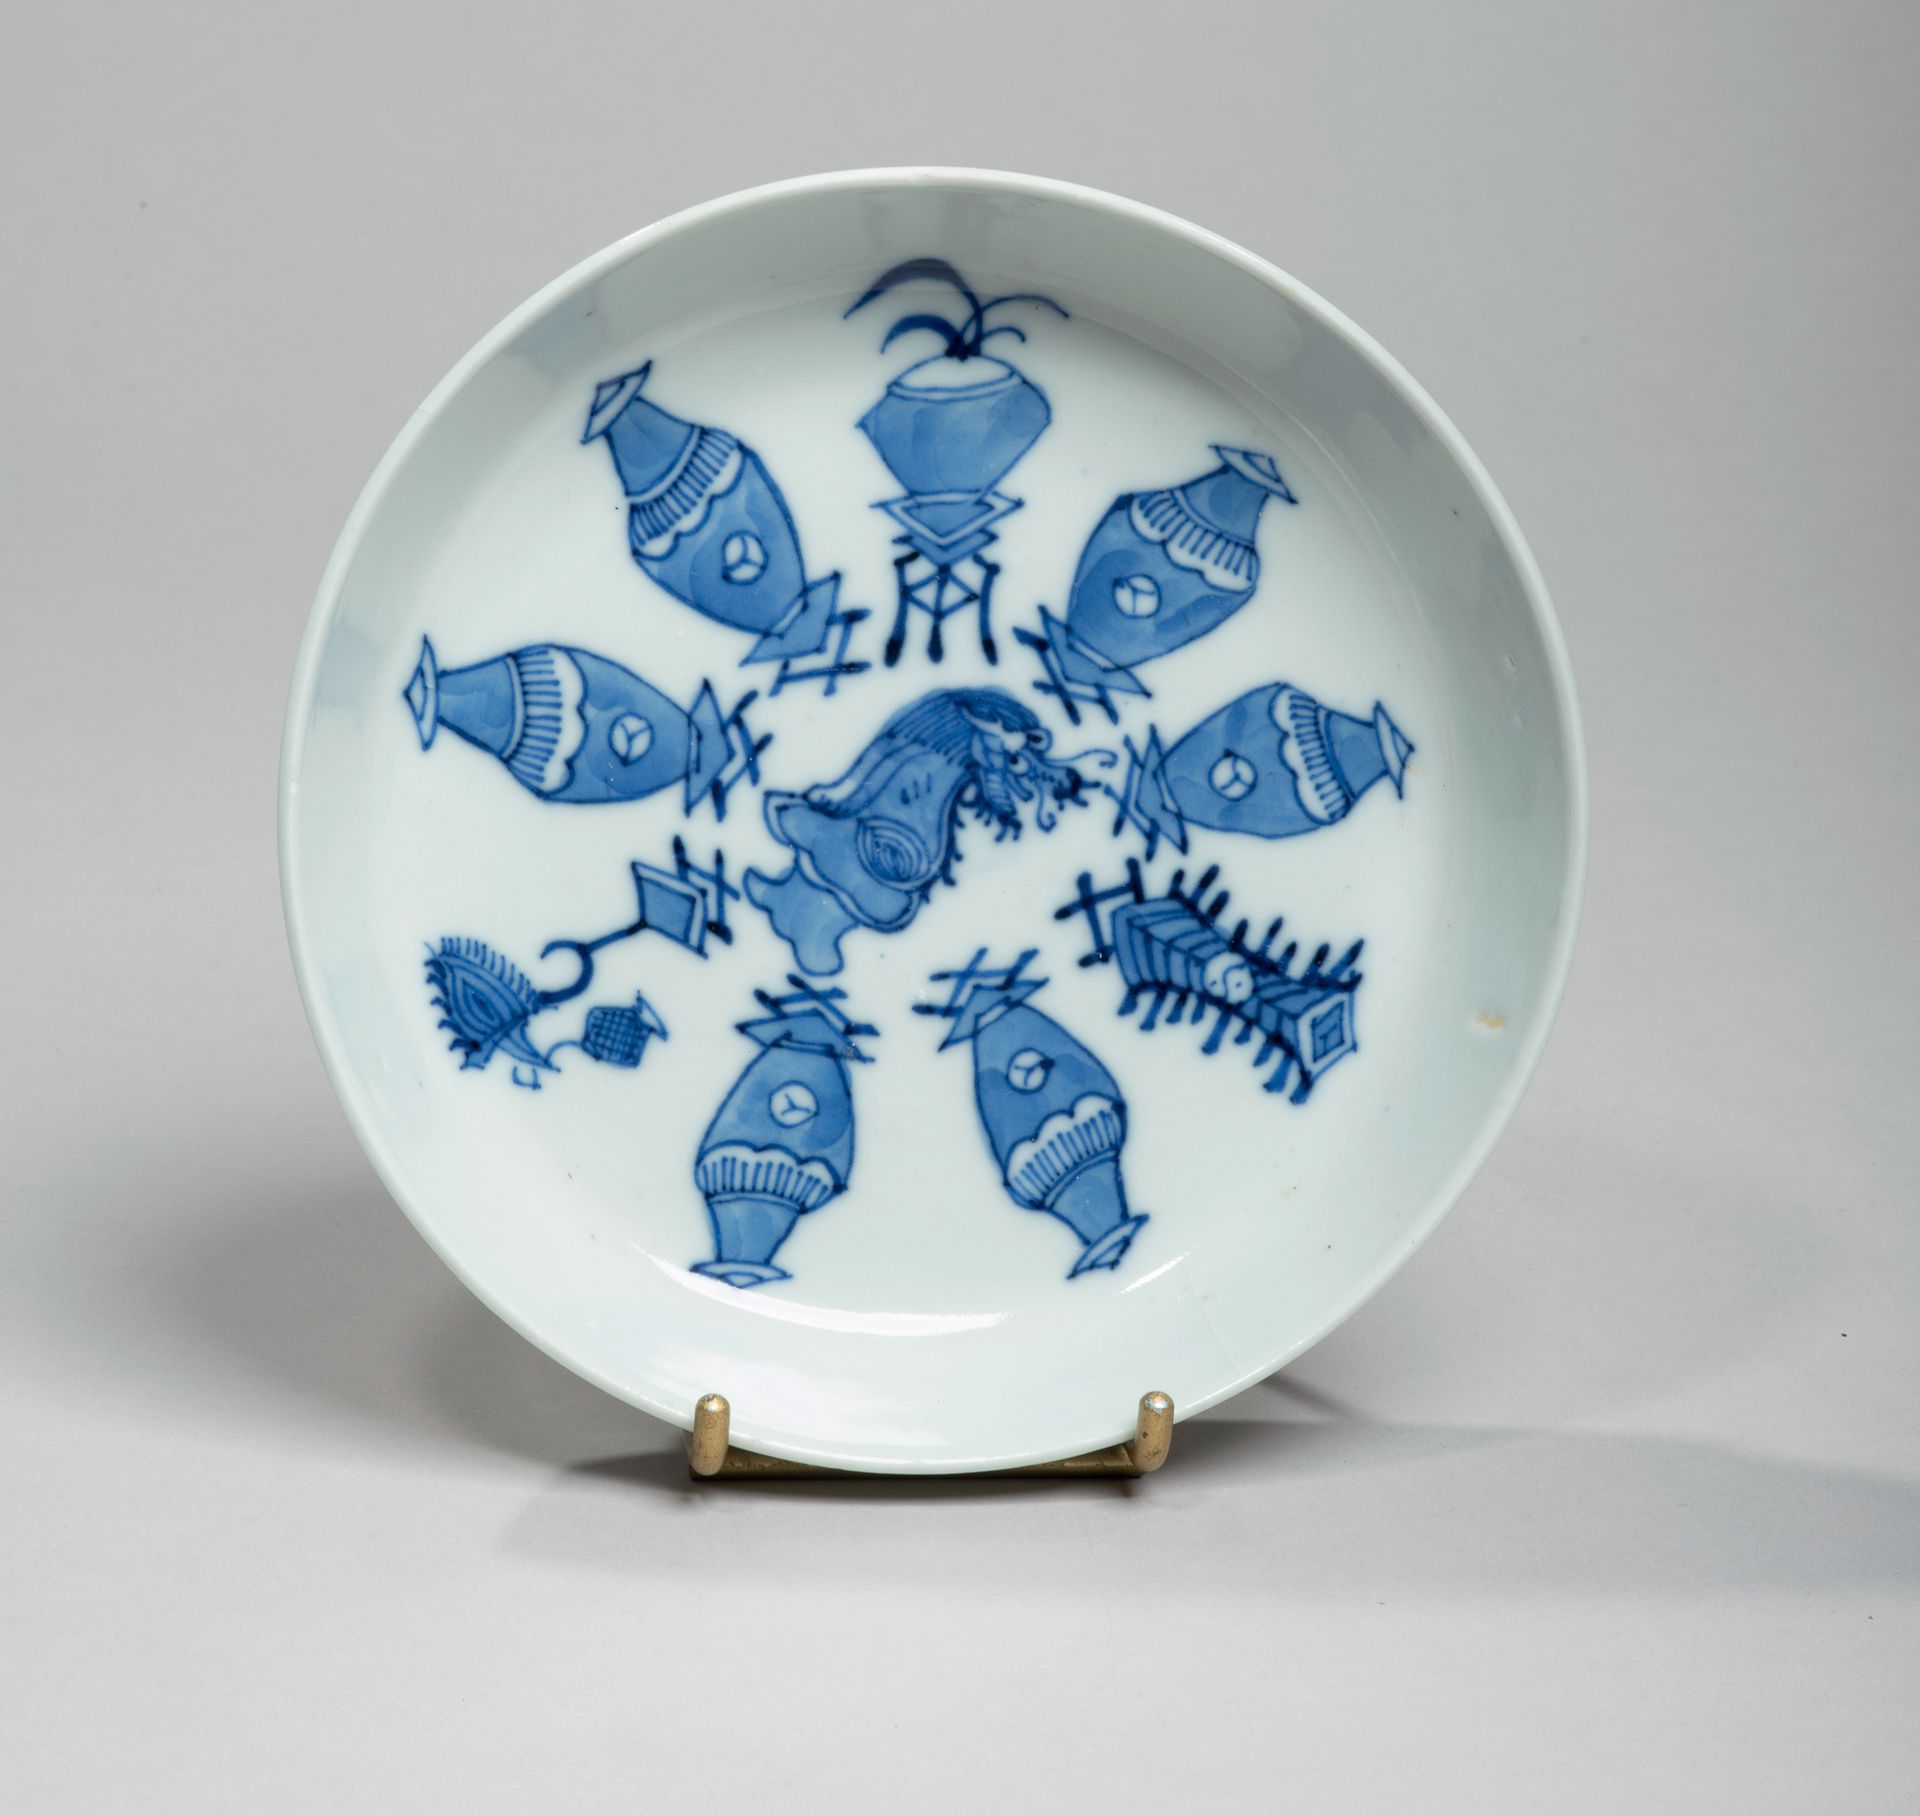 VIETNAM, Hue - Début XXe siècle - 瓷盘以蓝色釉下彩装饰的风格化花瓶。背面有Nhý?c thâm trân tàng(古代珍贵的&hellip;